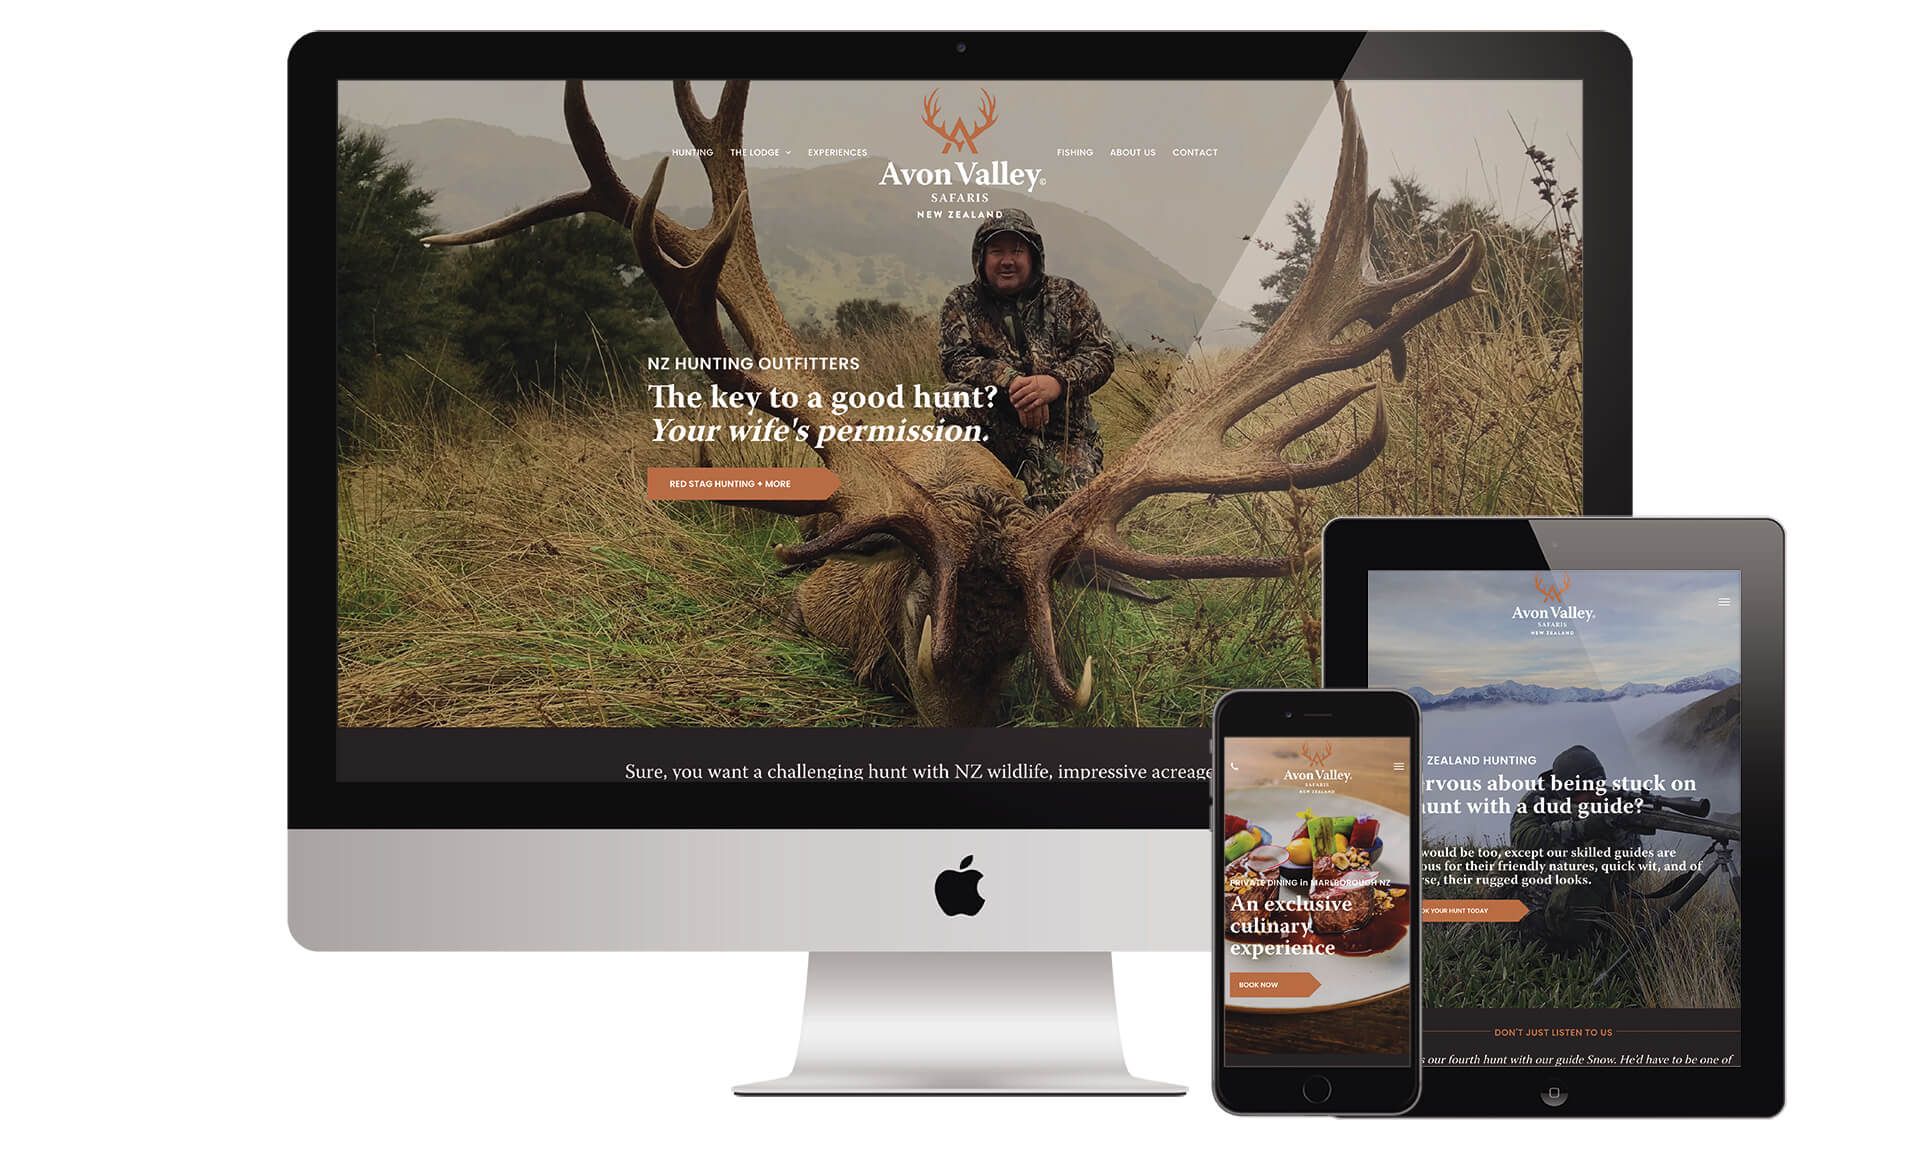 Avon Valley Safaris website designed by Vanilla Hayes creative graphic design  studio in Blenheim, Marlborough, New Zealand